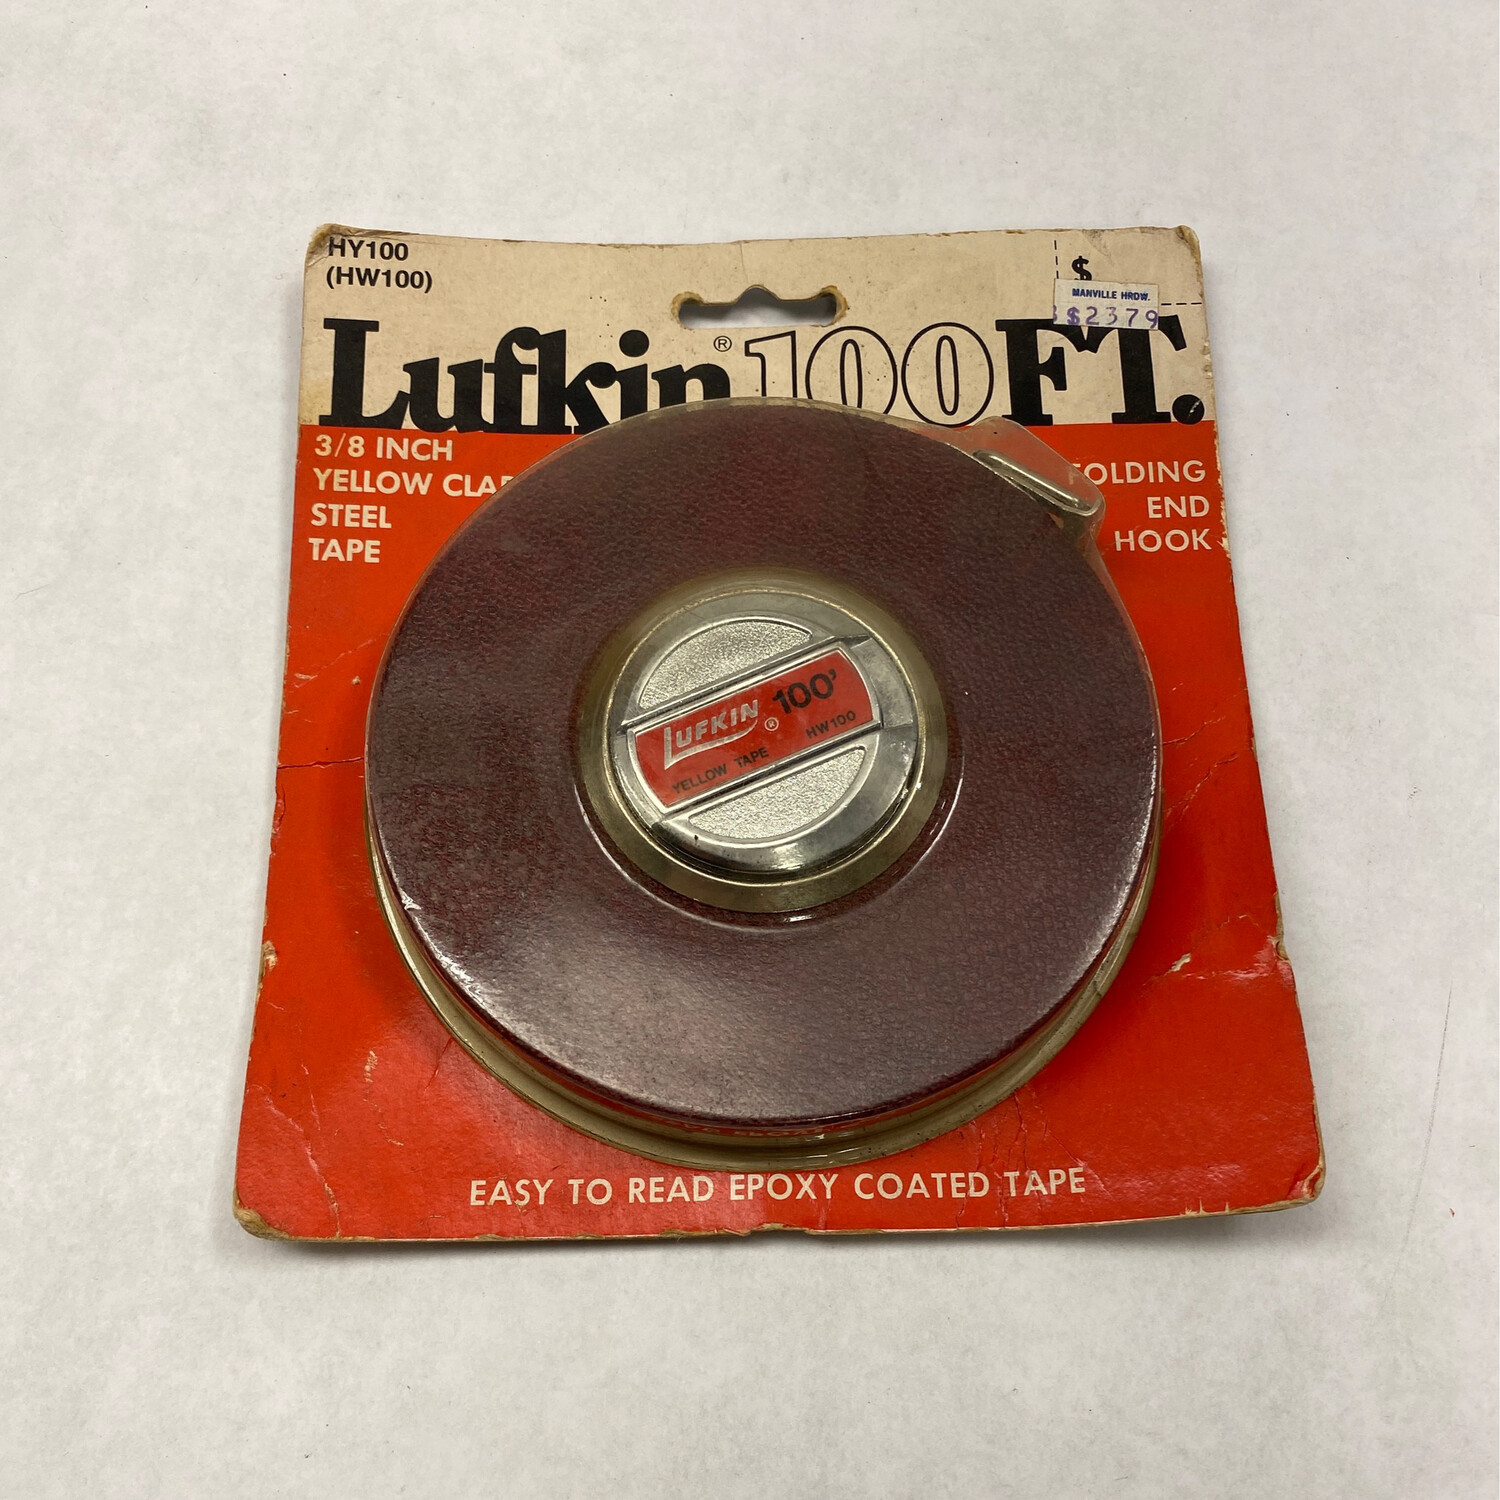 Lufkin Home Shop 100Ft. Measuring Tape, HW100